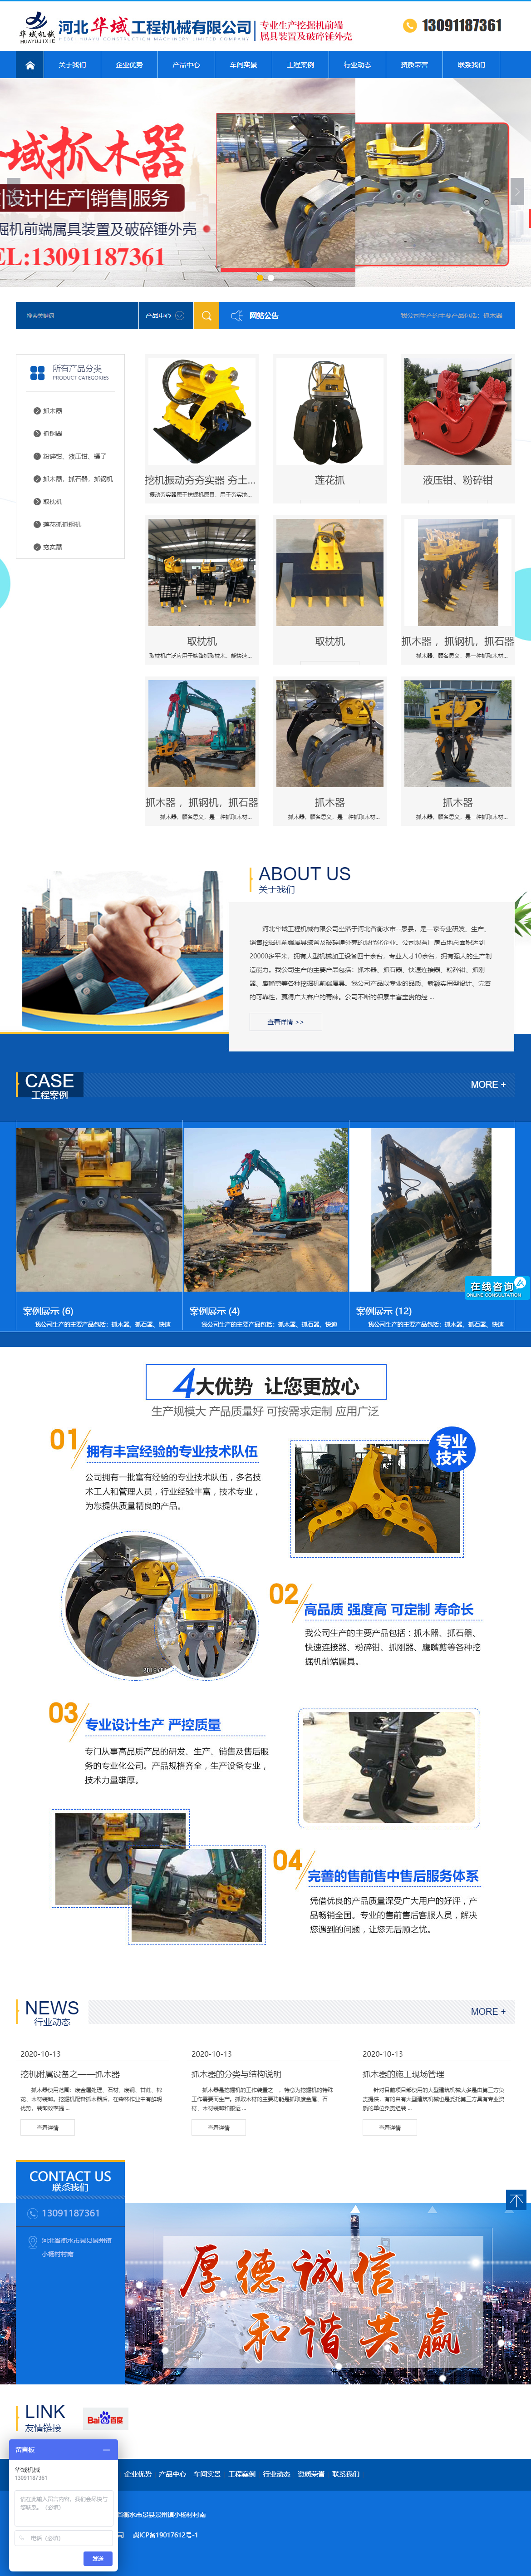 河北华域工程机械有限公司网站案例